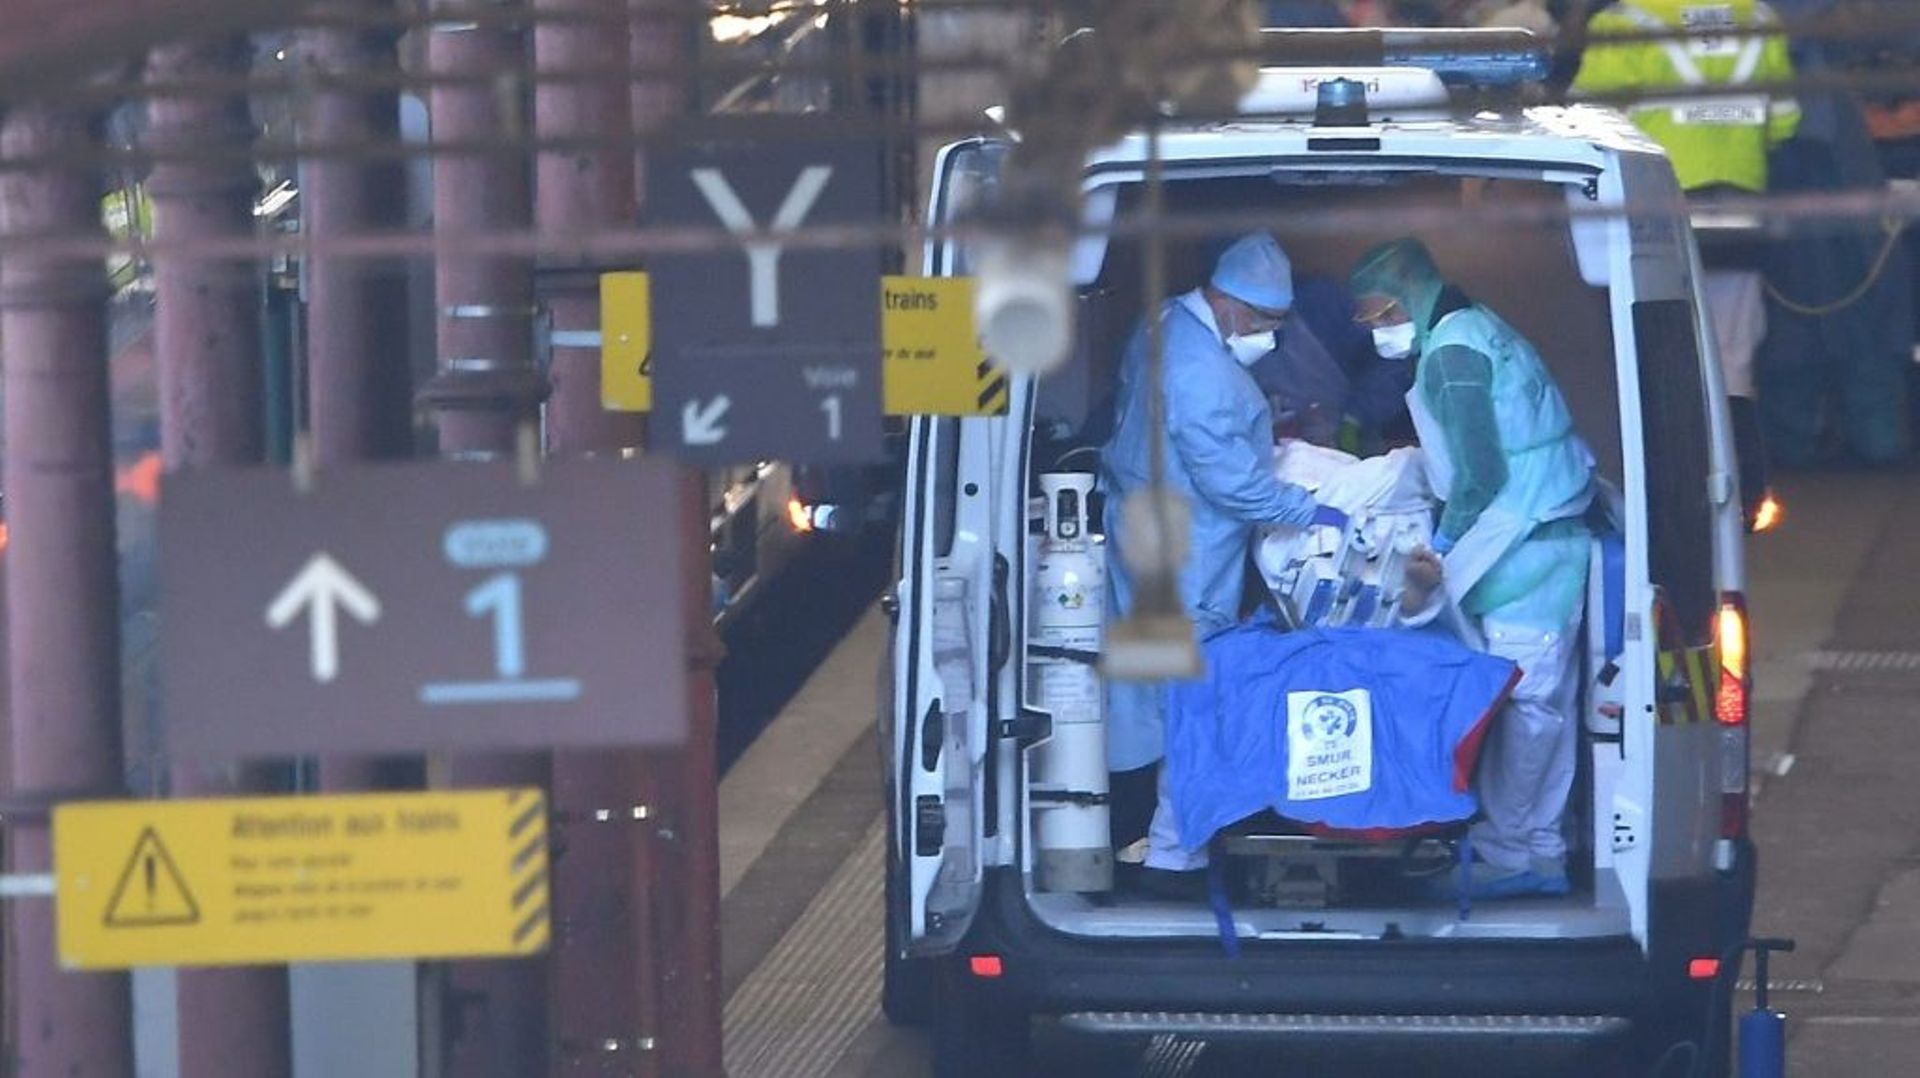 Des équipes médicales embarquent des patients contaminés par le coronavirus à bord d'un TGV médicalisé pour les évacuer vers des hôpitaux des Pays-de-la-Loire, le 26 mars 2020 à Strasbourg